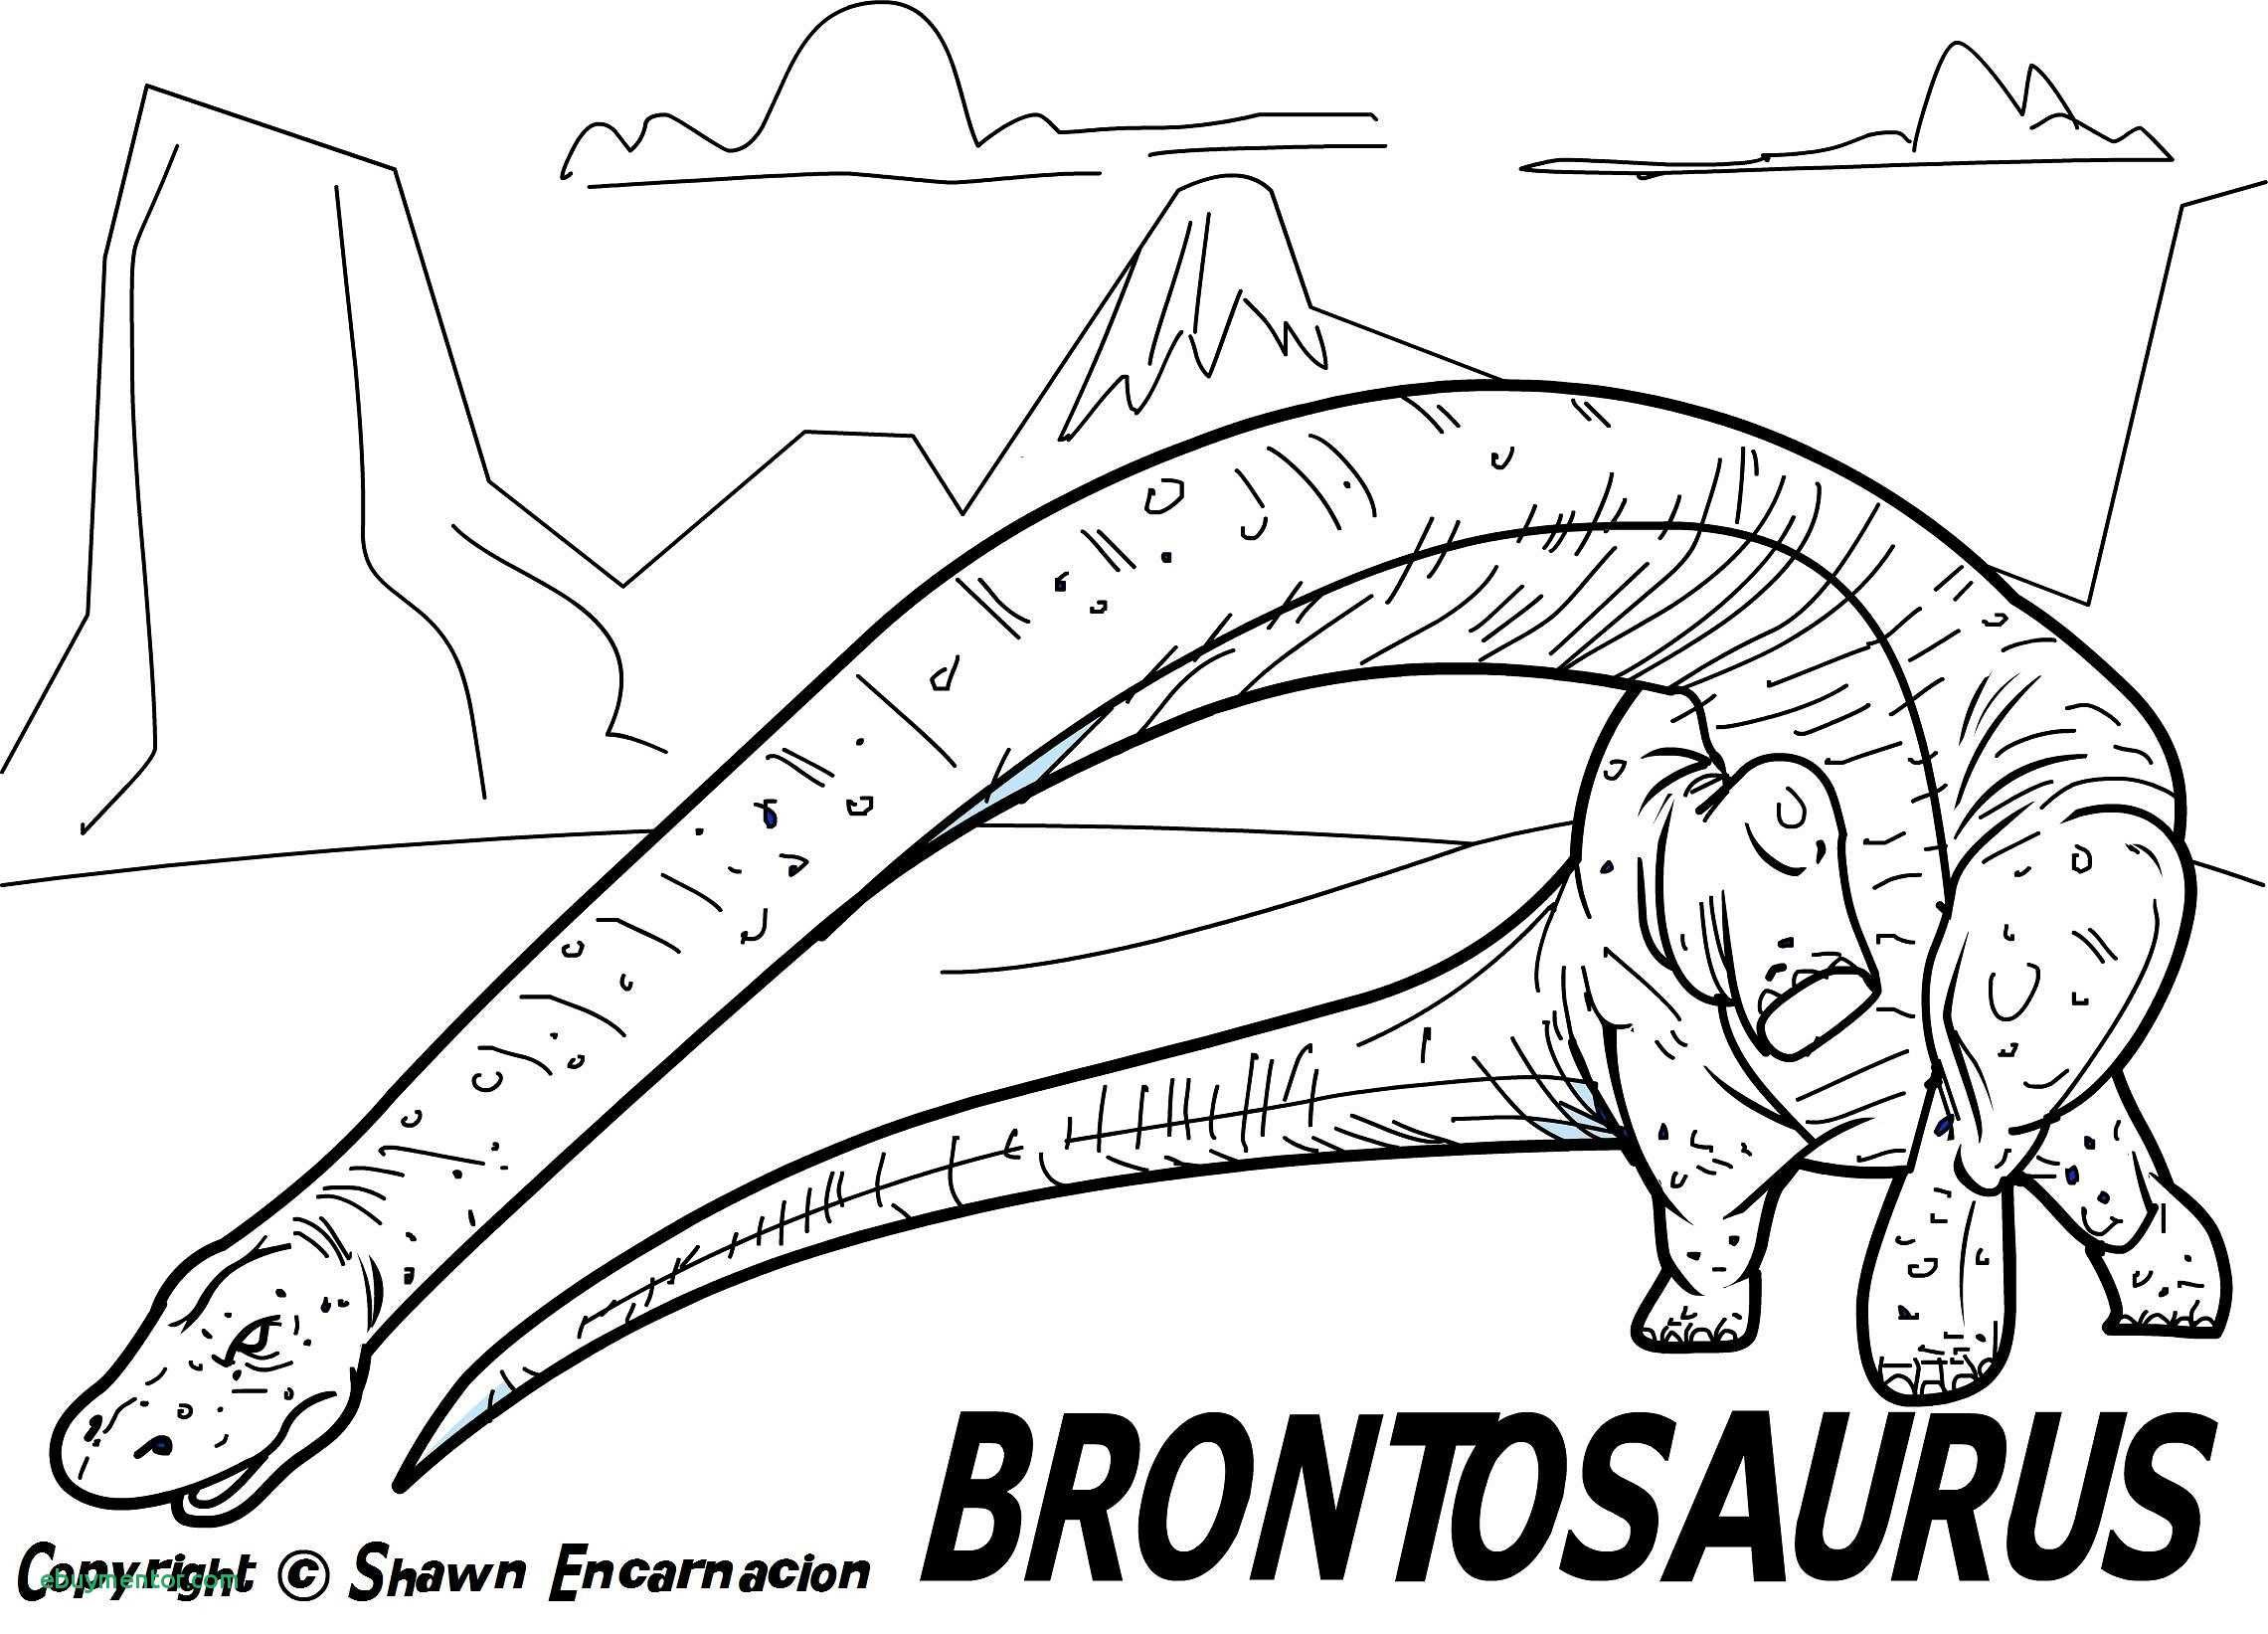 dino-dan-coloring-sheets-of-dino-dan-coloring-sheets Dino Dan Coloring Sheets Dinosaurs 